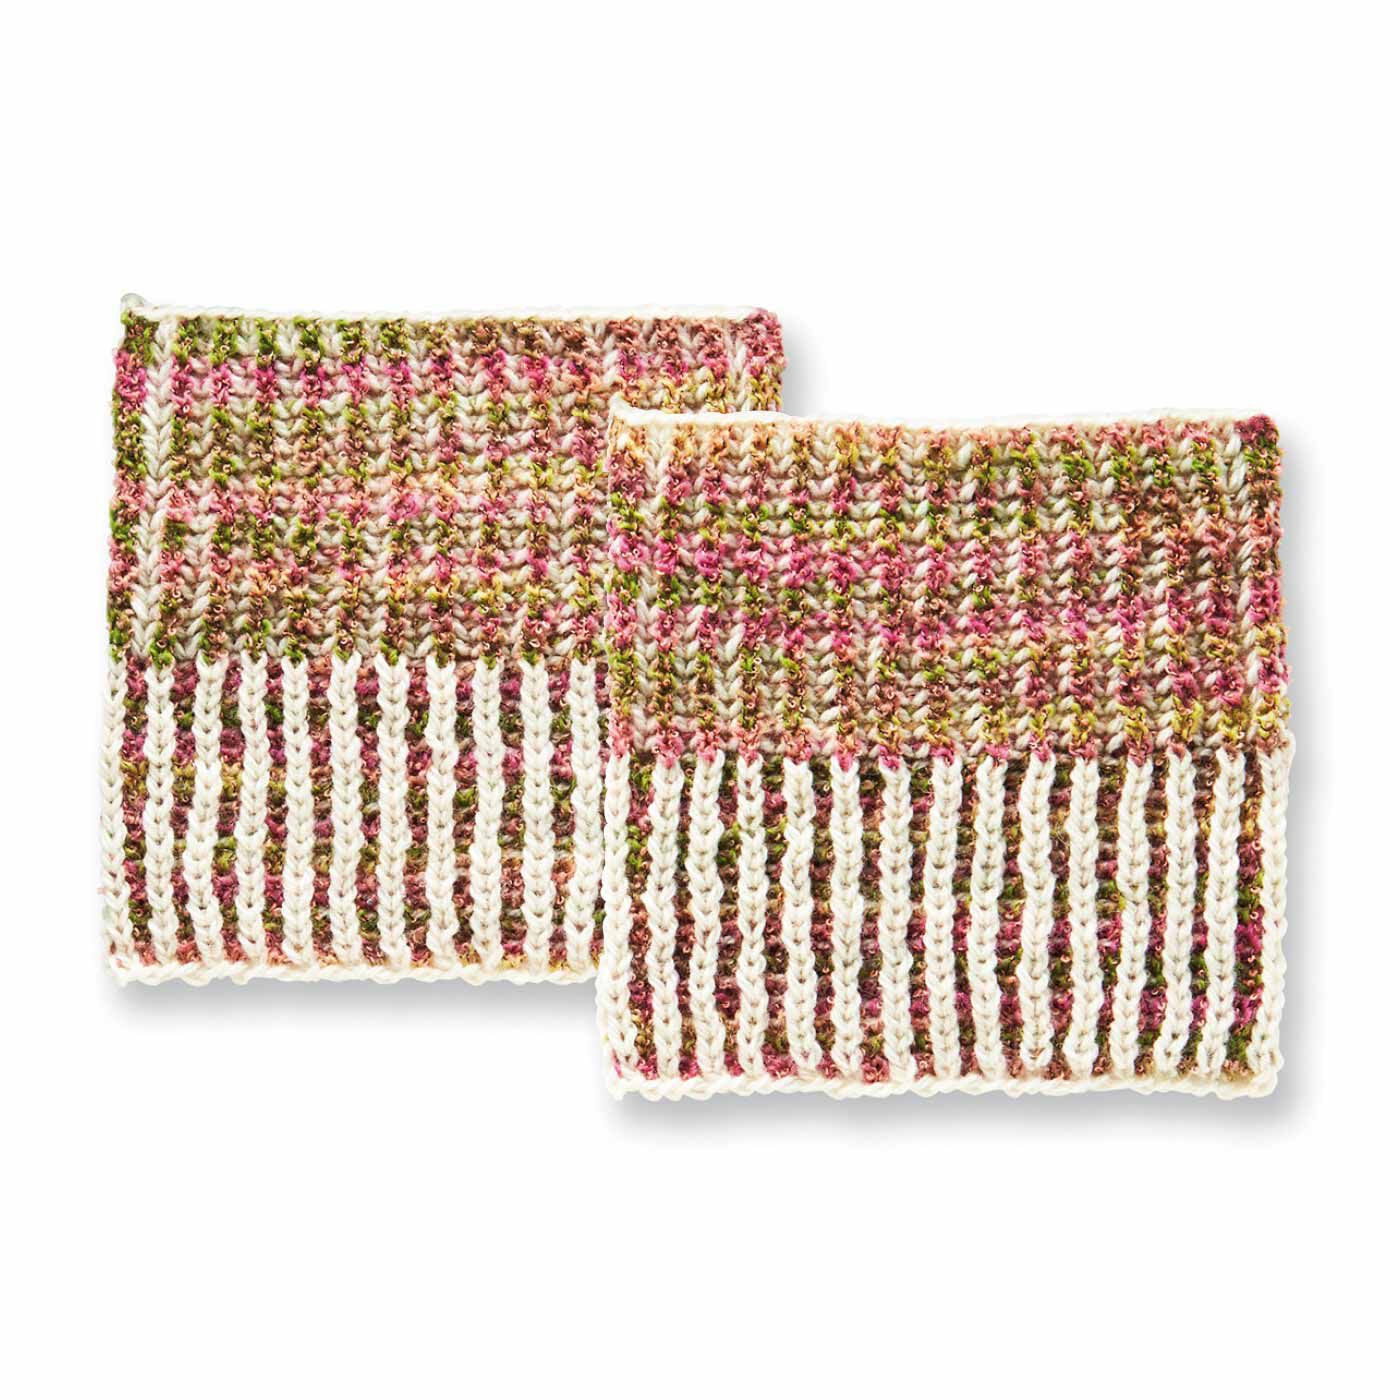 クチュリエ|棒針編みの沼にはまる ユニーク編み地のサンプラーの会|ざっくりふわふわブリオッシュ編み